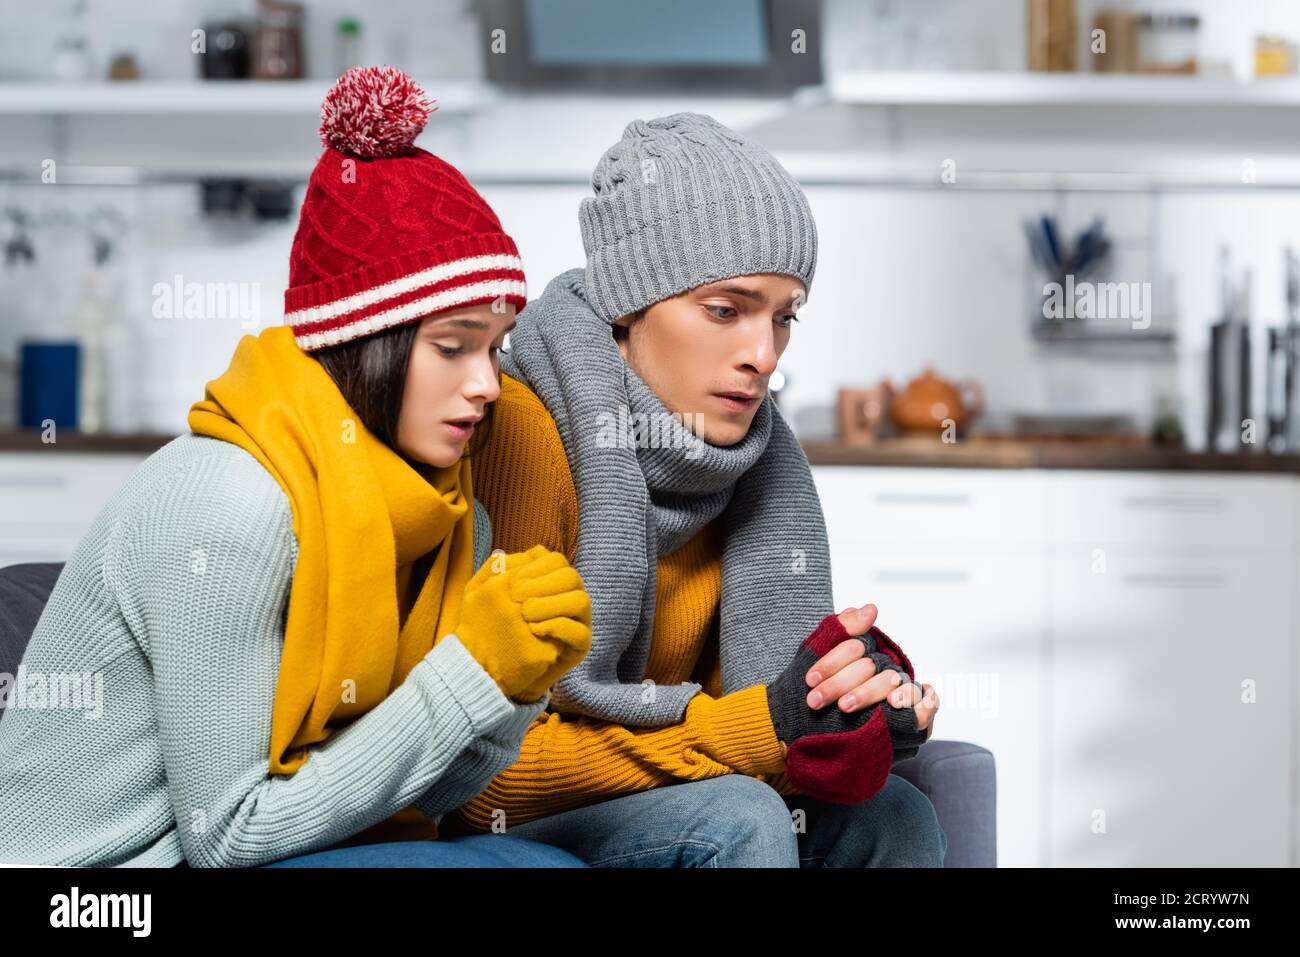 Junges Paar in warmen Hüten, Schals und Handschuhen sitzend mit geballten Händen, während sie in der kalten Küche friert Stockfoto